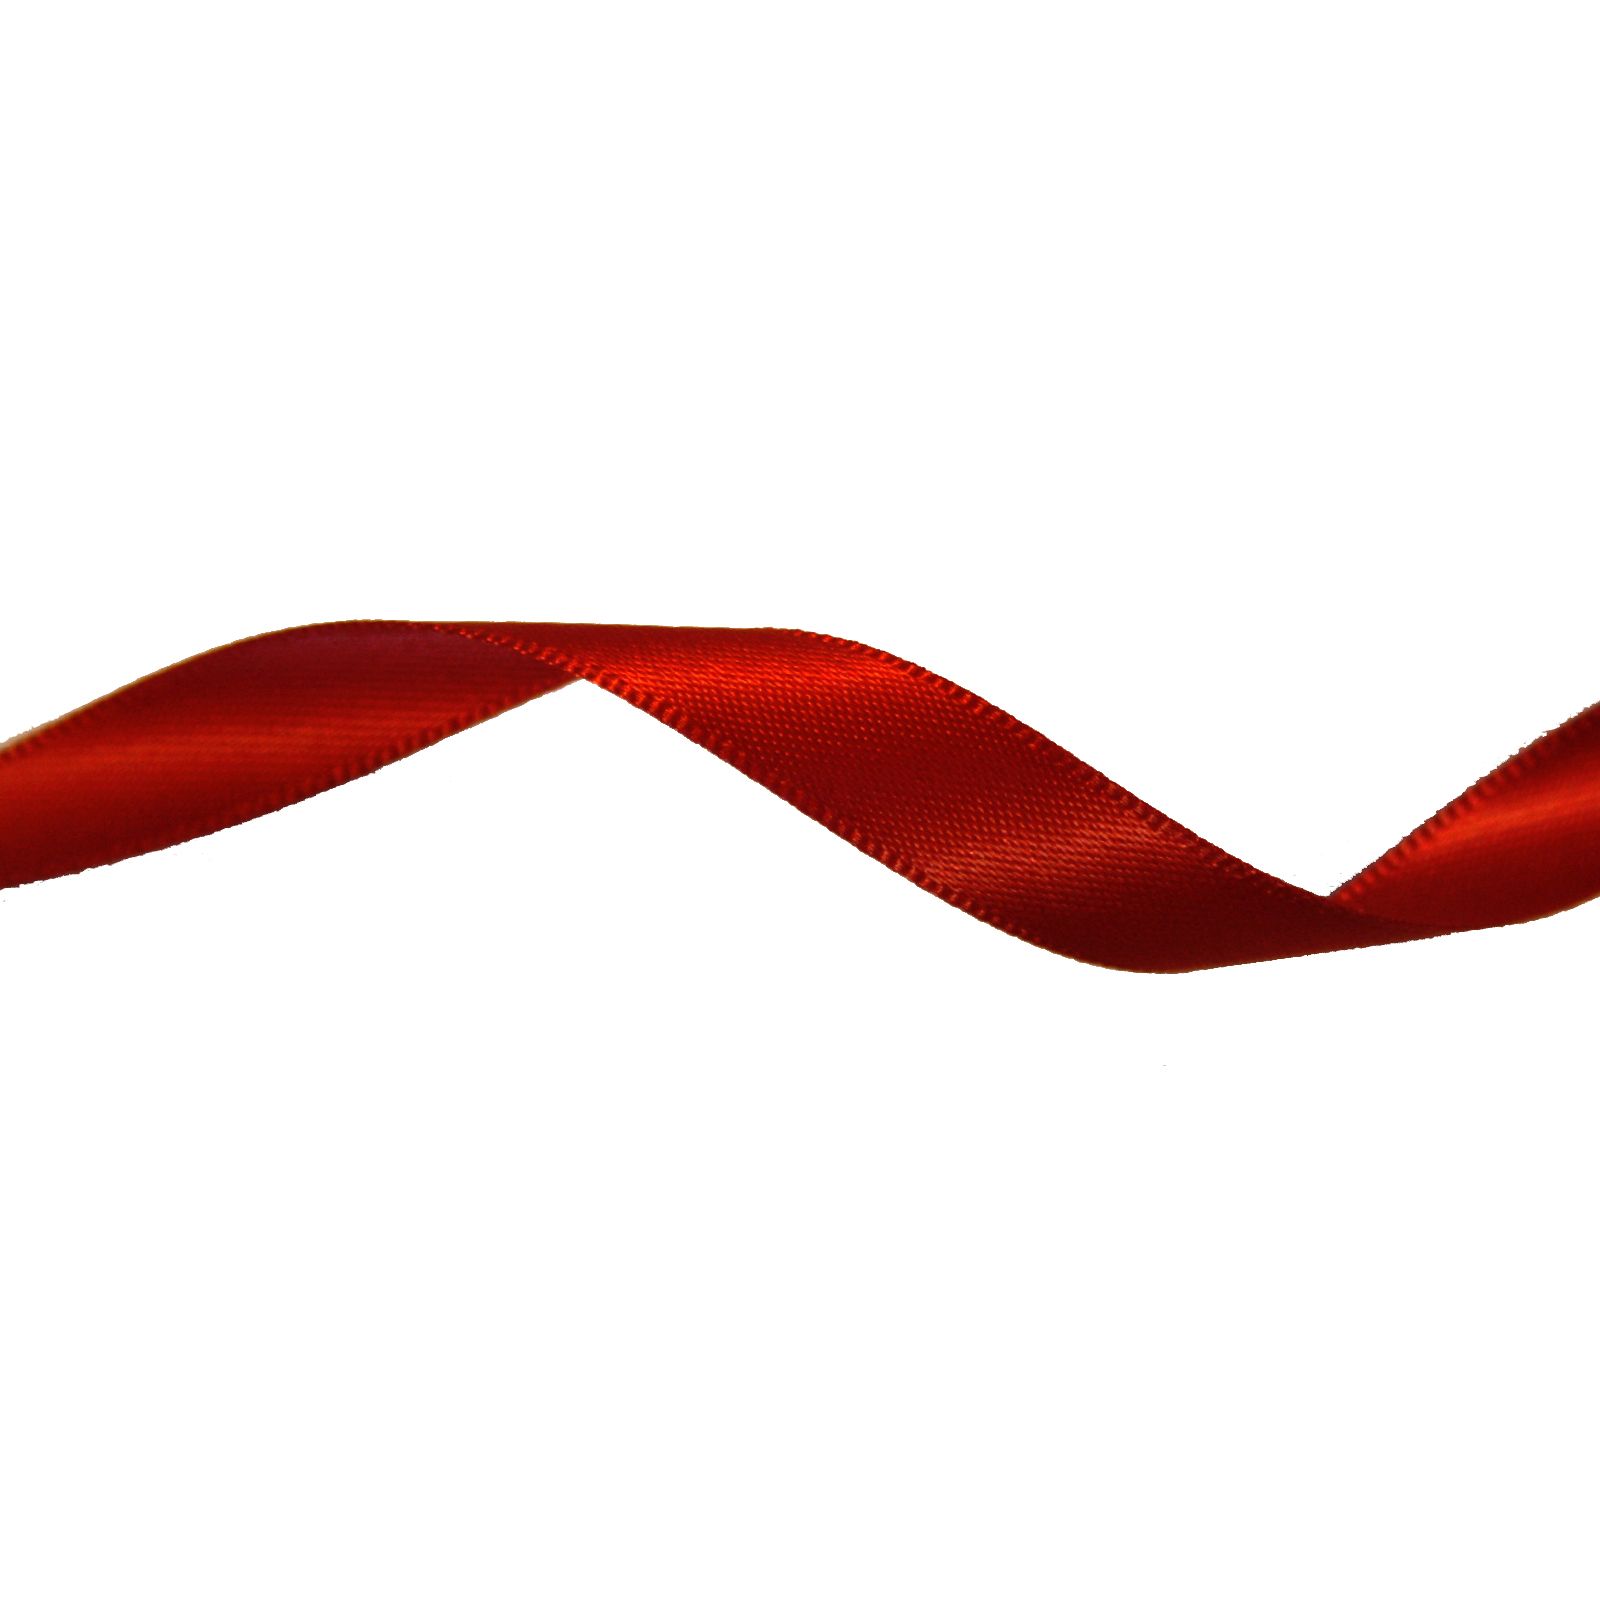 Vaessen Creative • Satin Ribbon 9mmx10m Dark Red